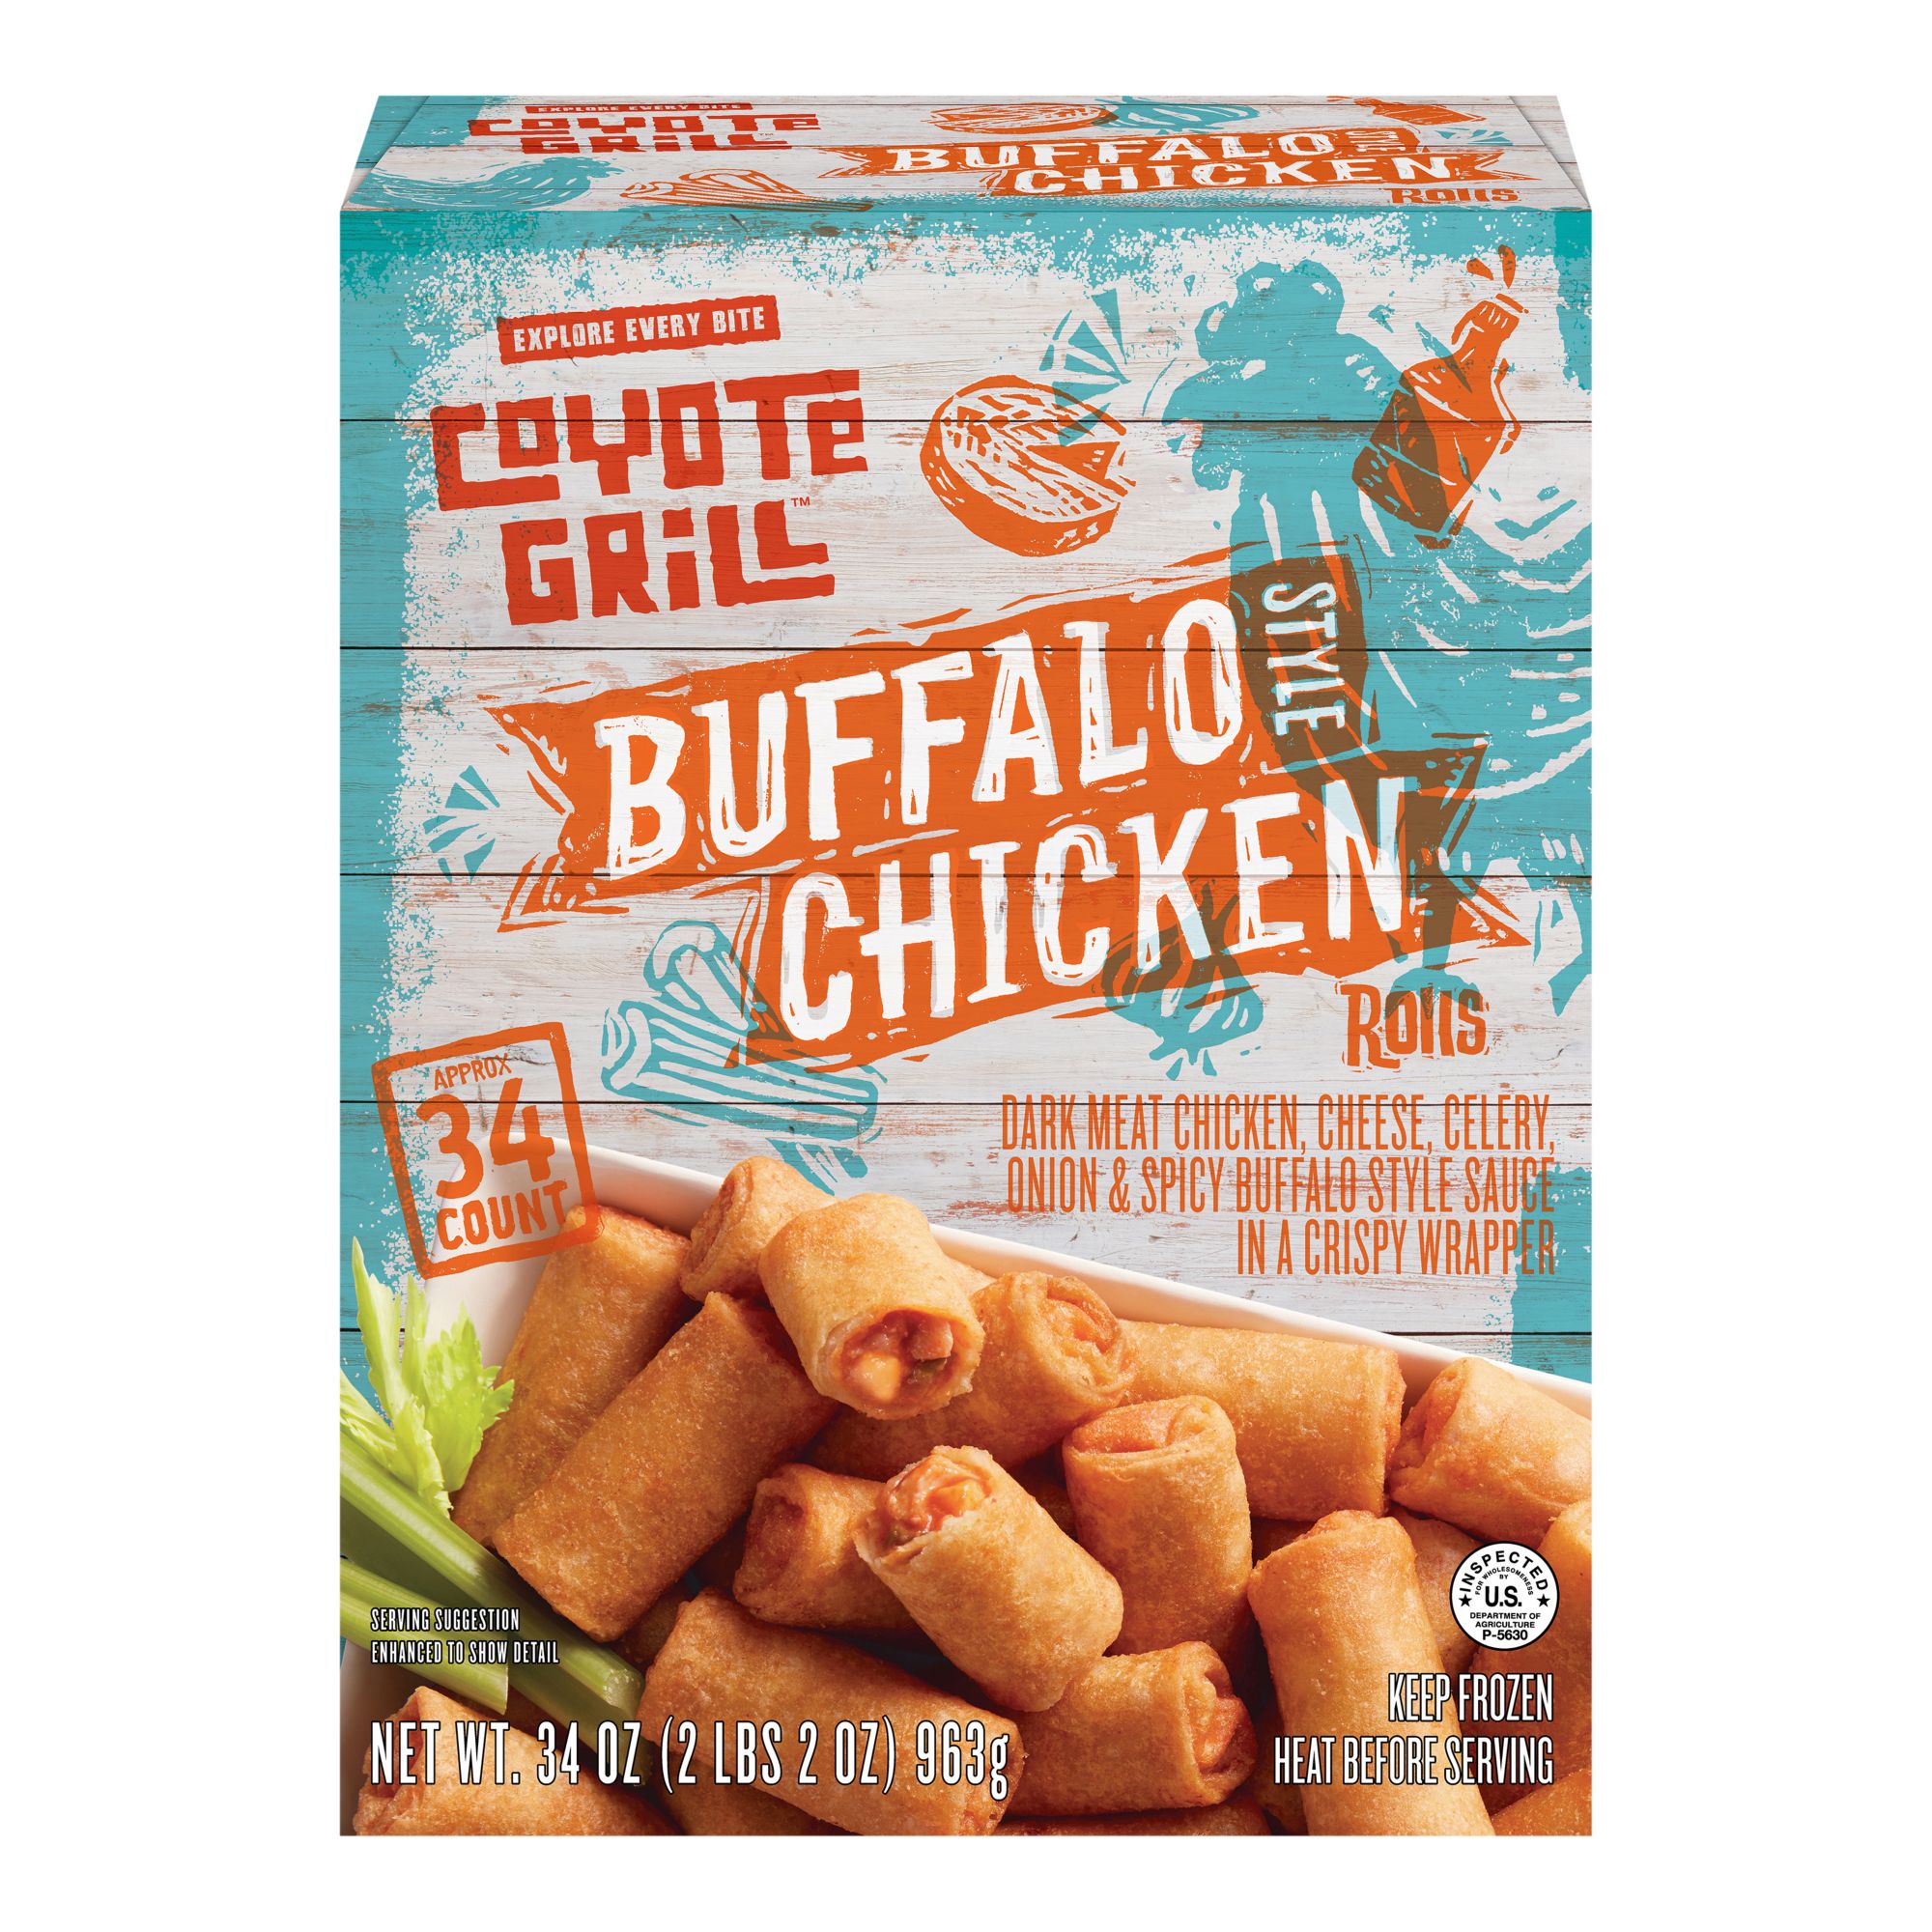 Coyote Grill Buffalo Chicken Rolls, 34 oz.